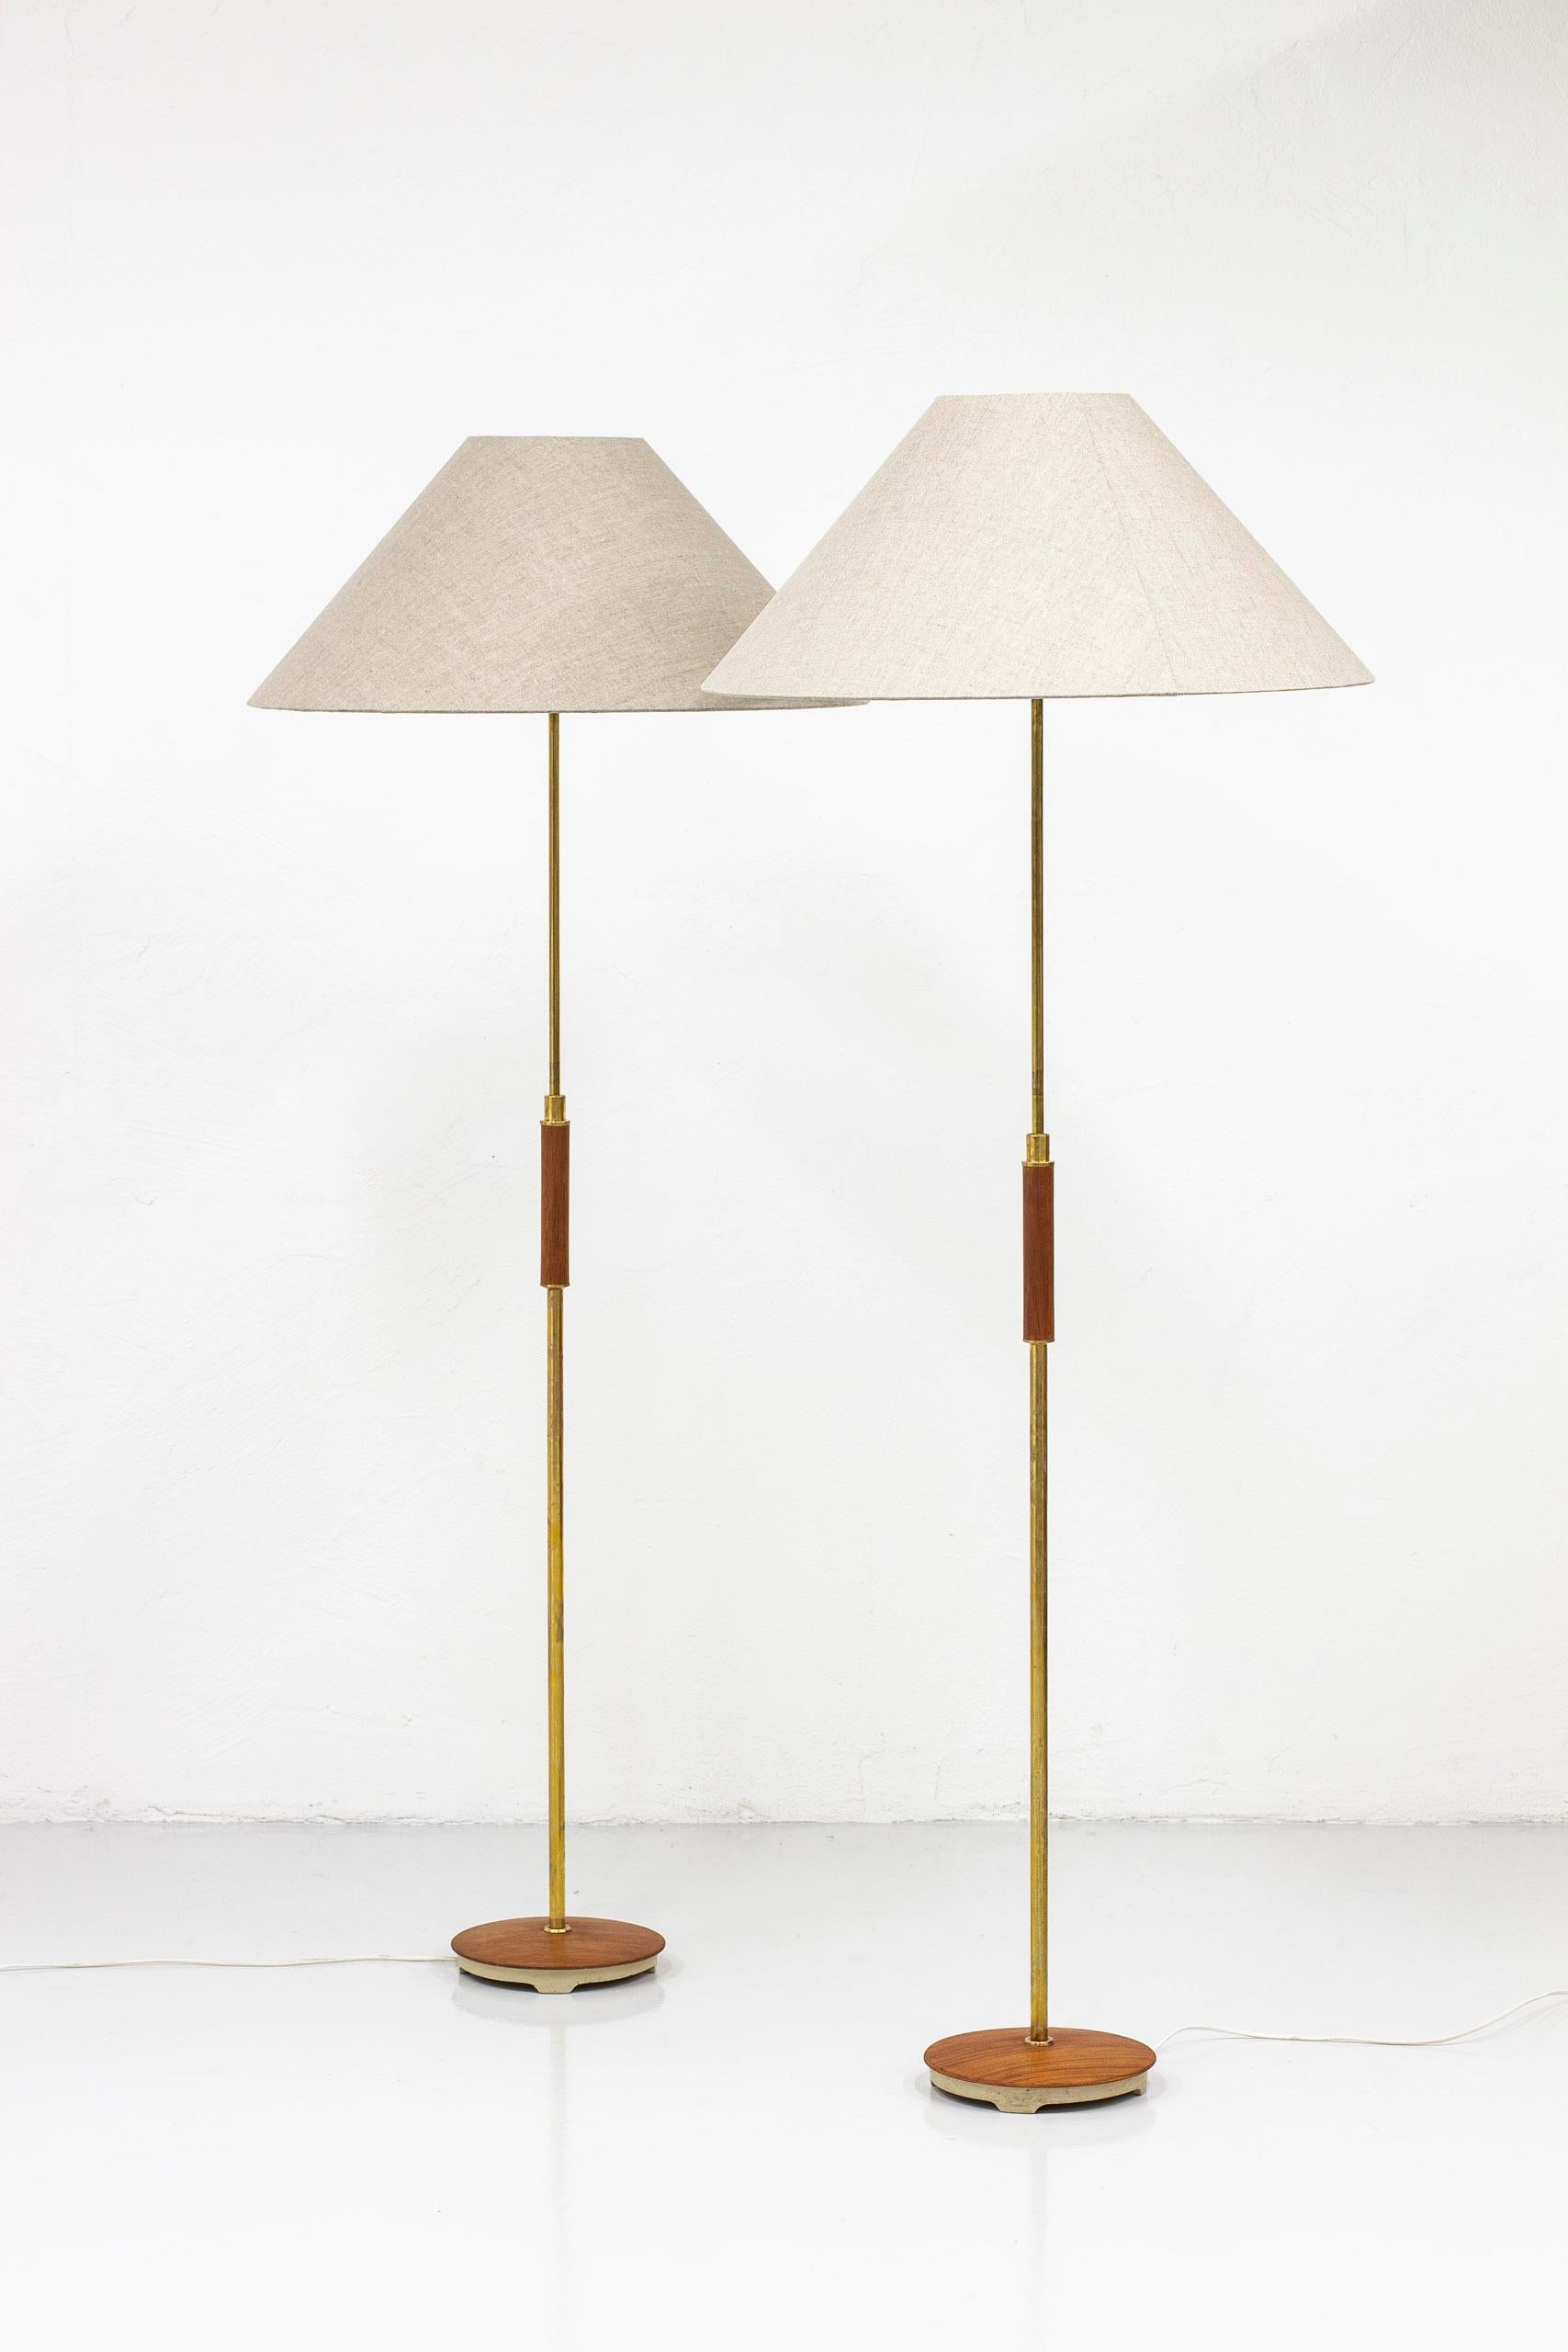 Swedish Pair of Floor Lamps by Bertil Brisborg, Nordiska Kompaniet, Sweden, 1952